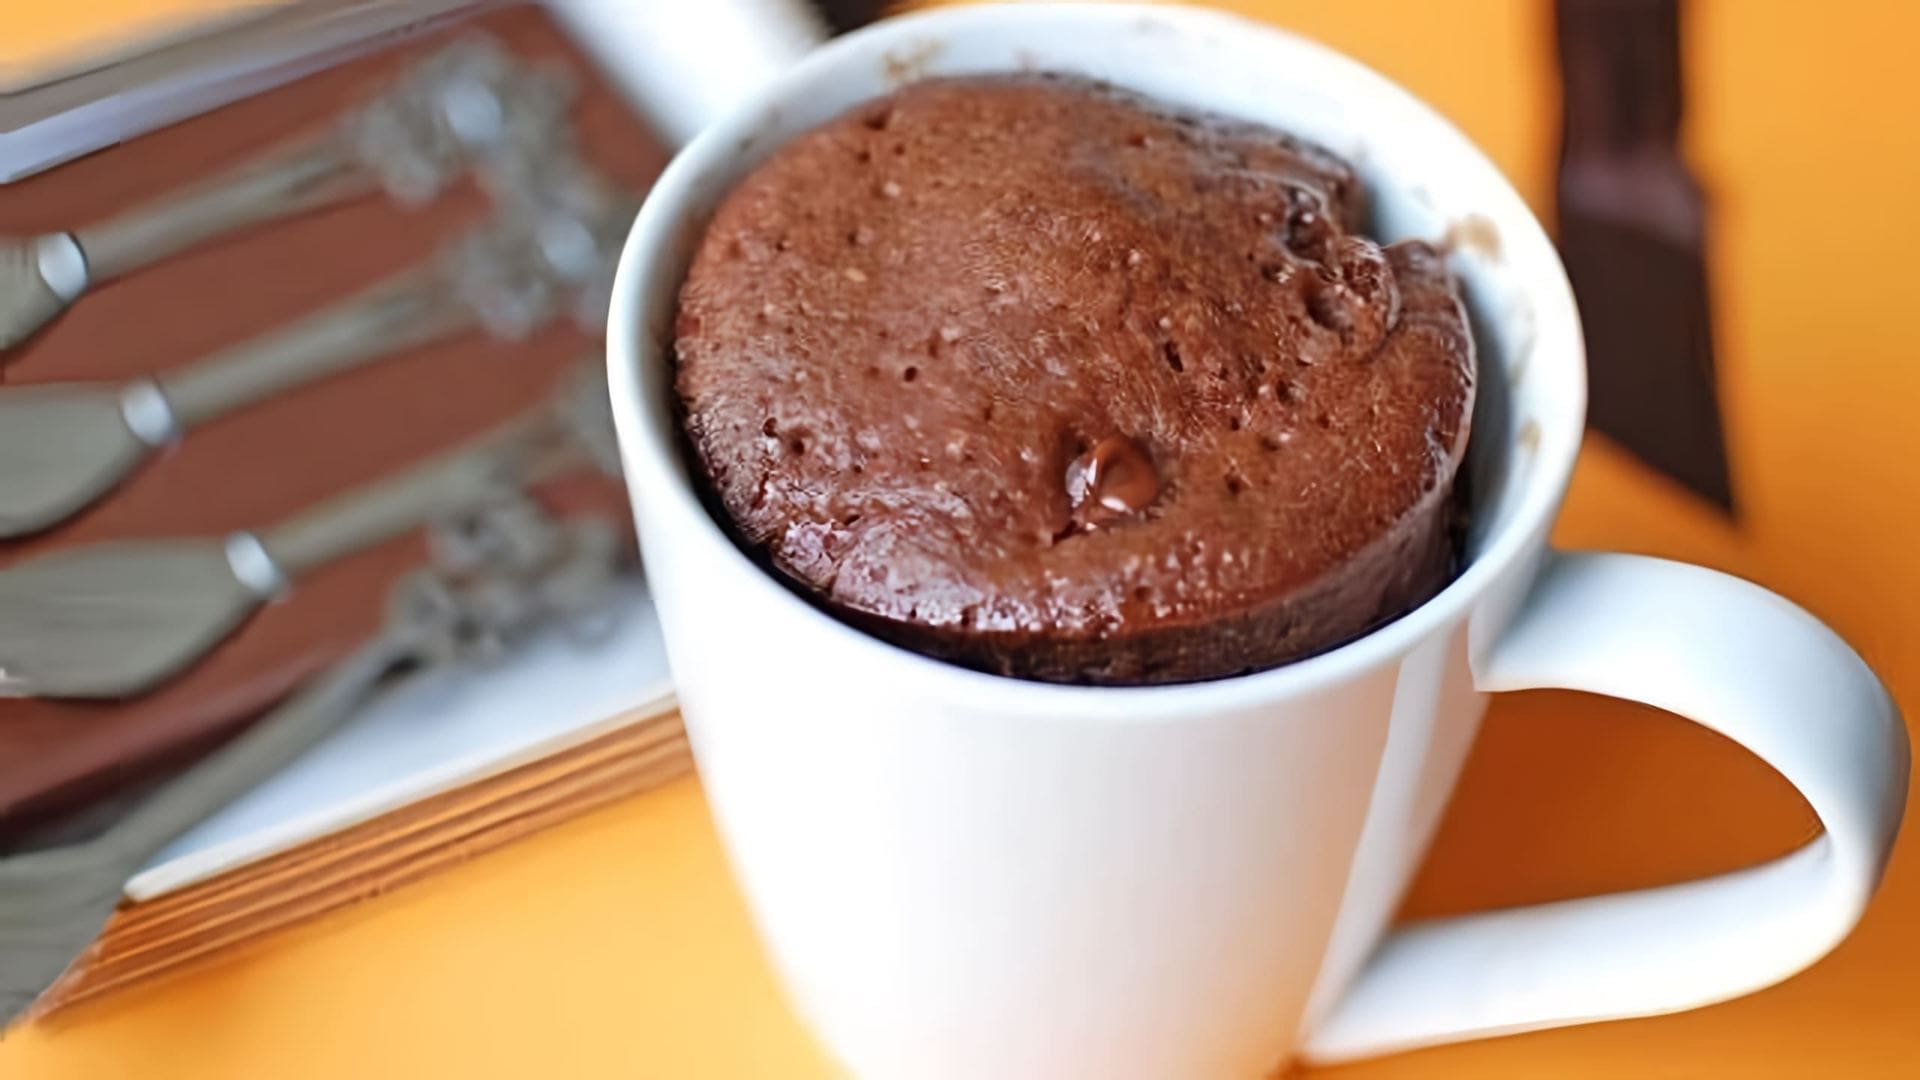 В этом видео демонстрируется рецепт шоколадного кекса, который можно приготовить всего за 3 минуты в микроволновке